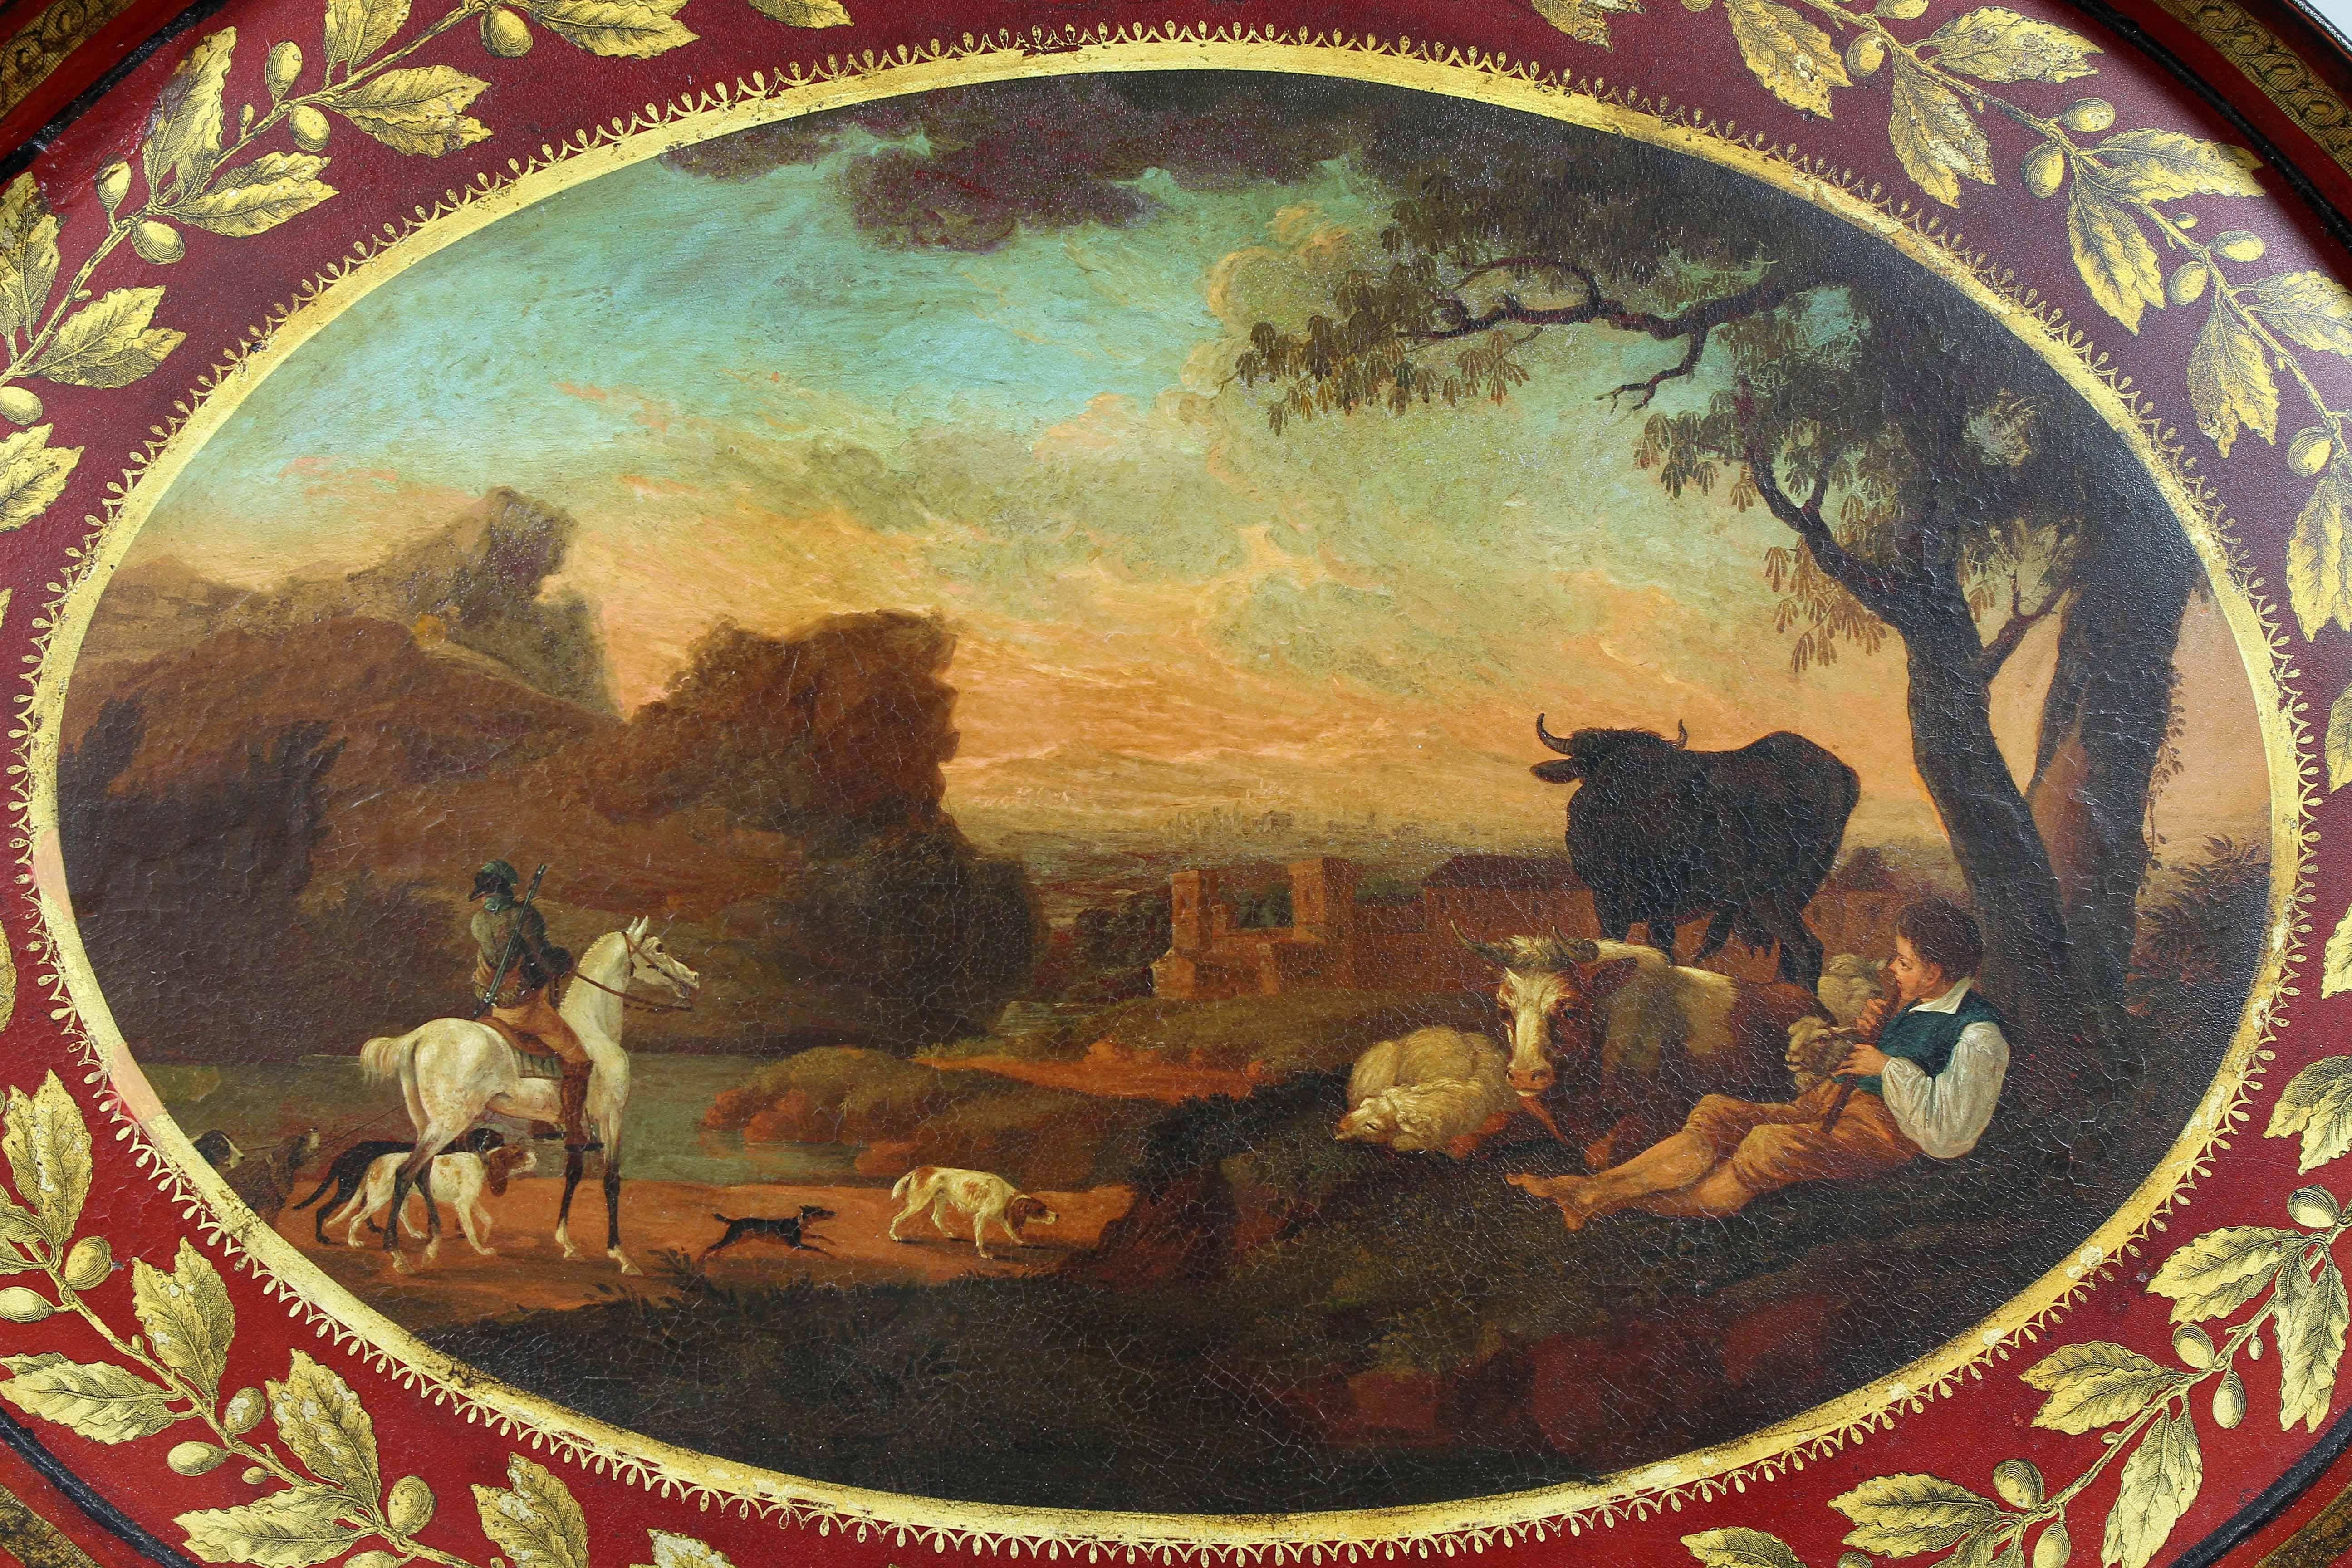 Oval mit rotem Grund und vergoldeter Blattspitze am äußeren Rand, schön gemalte pastorale Szene in der Mitte.